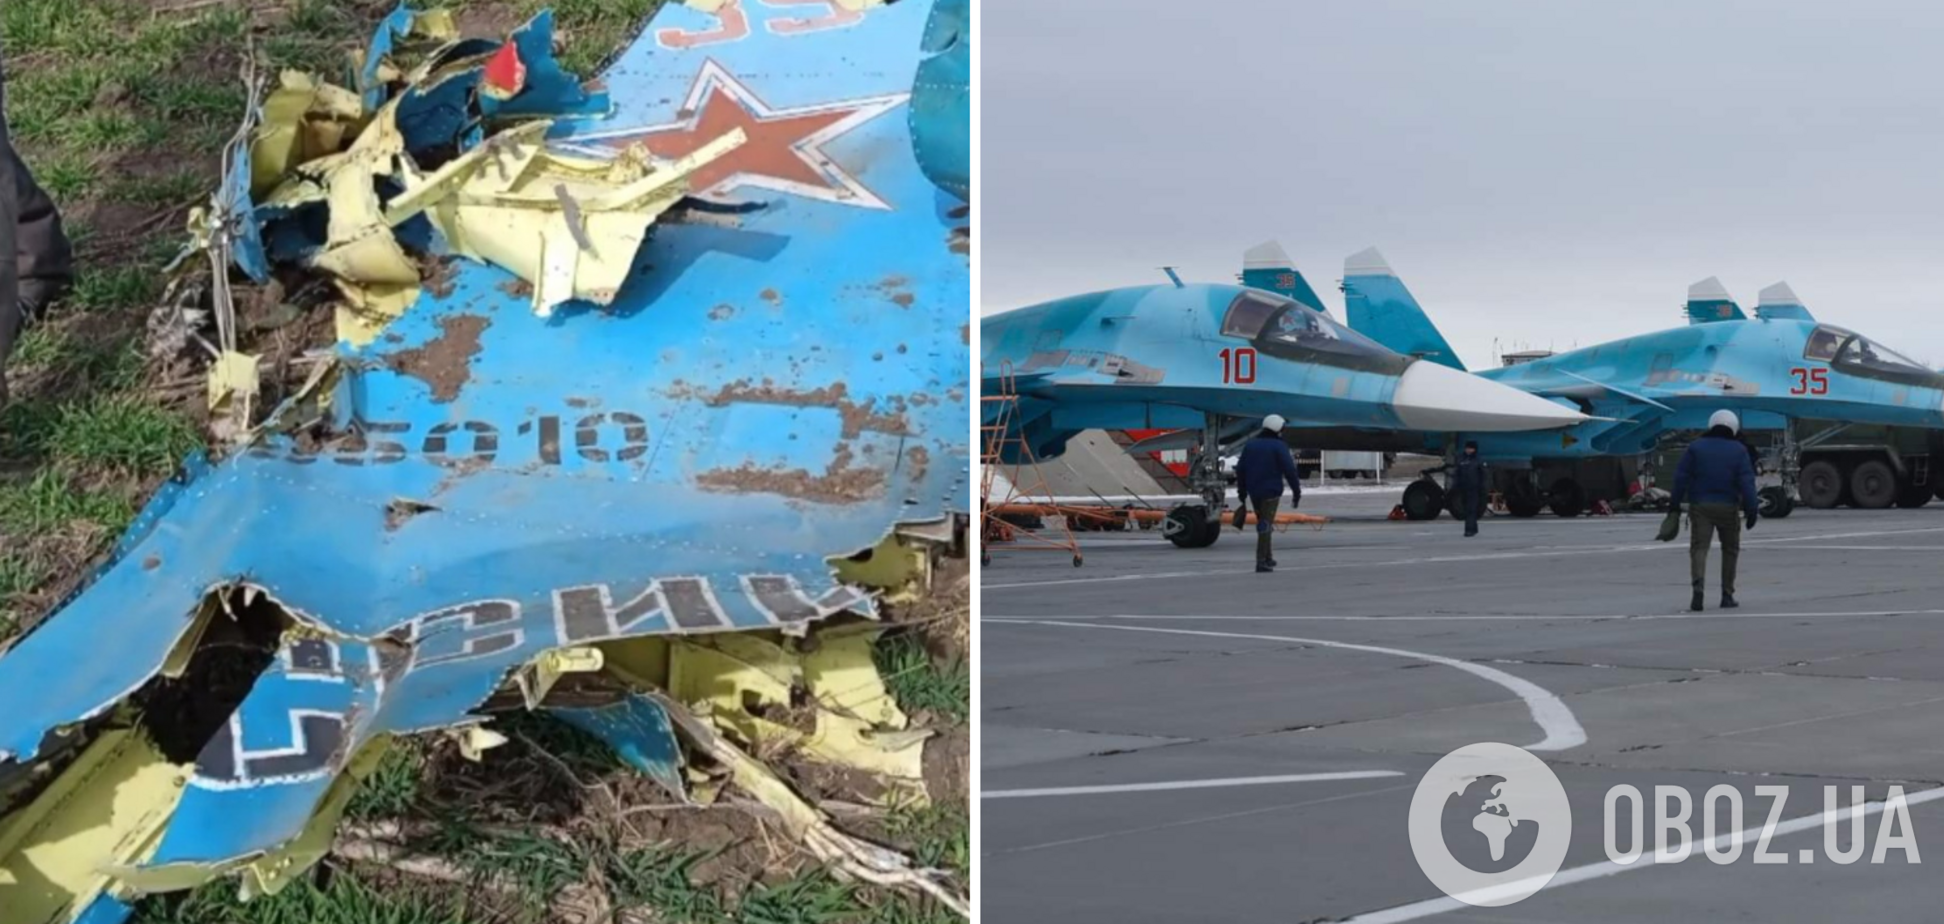 Все, що залишилося від російського Су-34, зібрали на причіп: з'явилося знакове фото 'гордості авіації РФ'